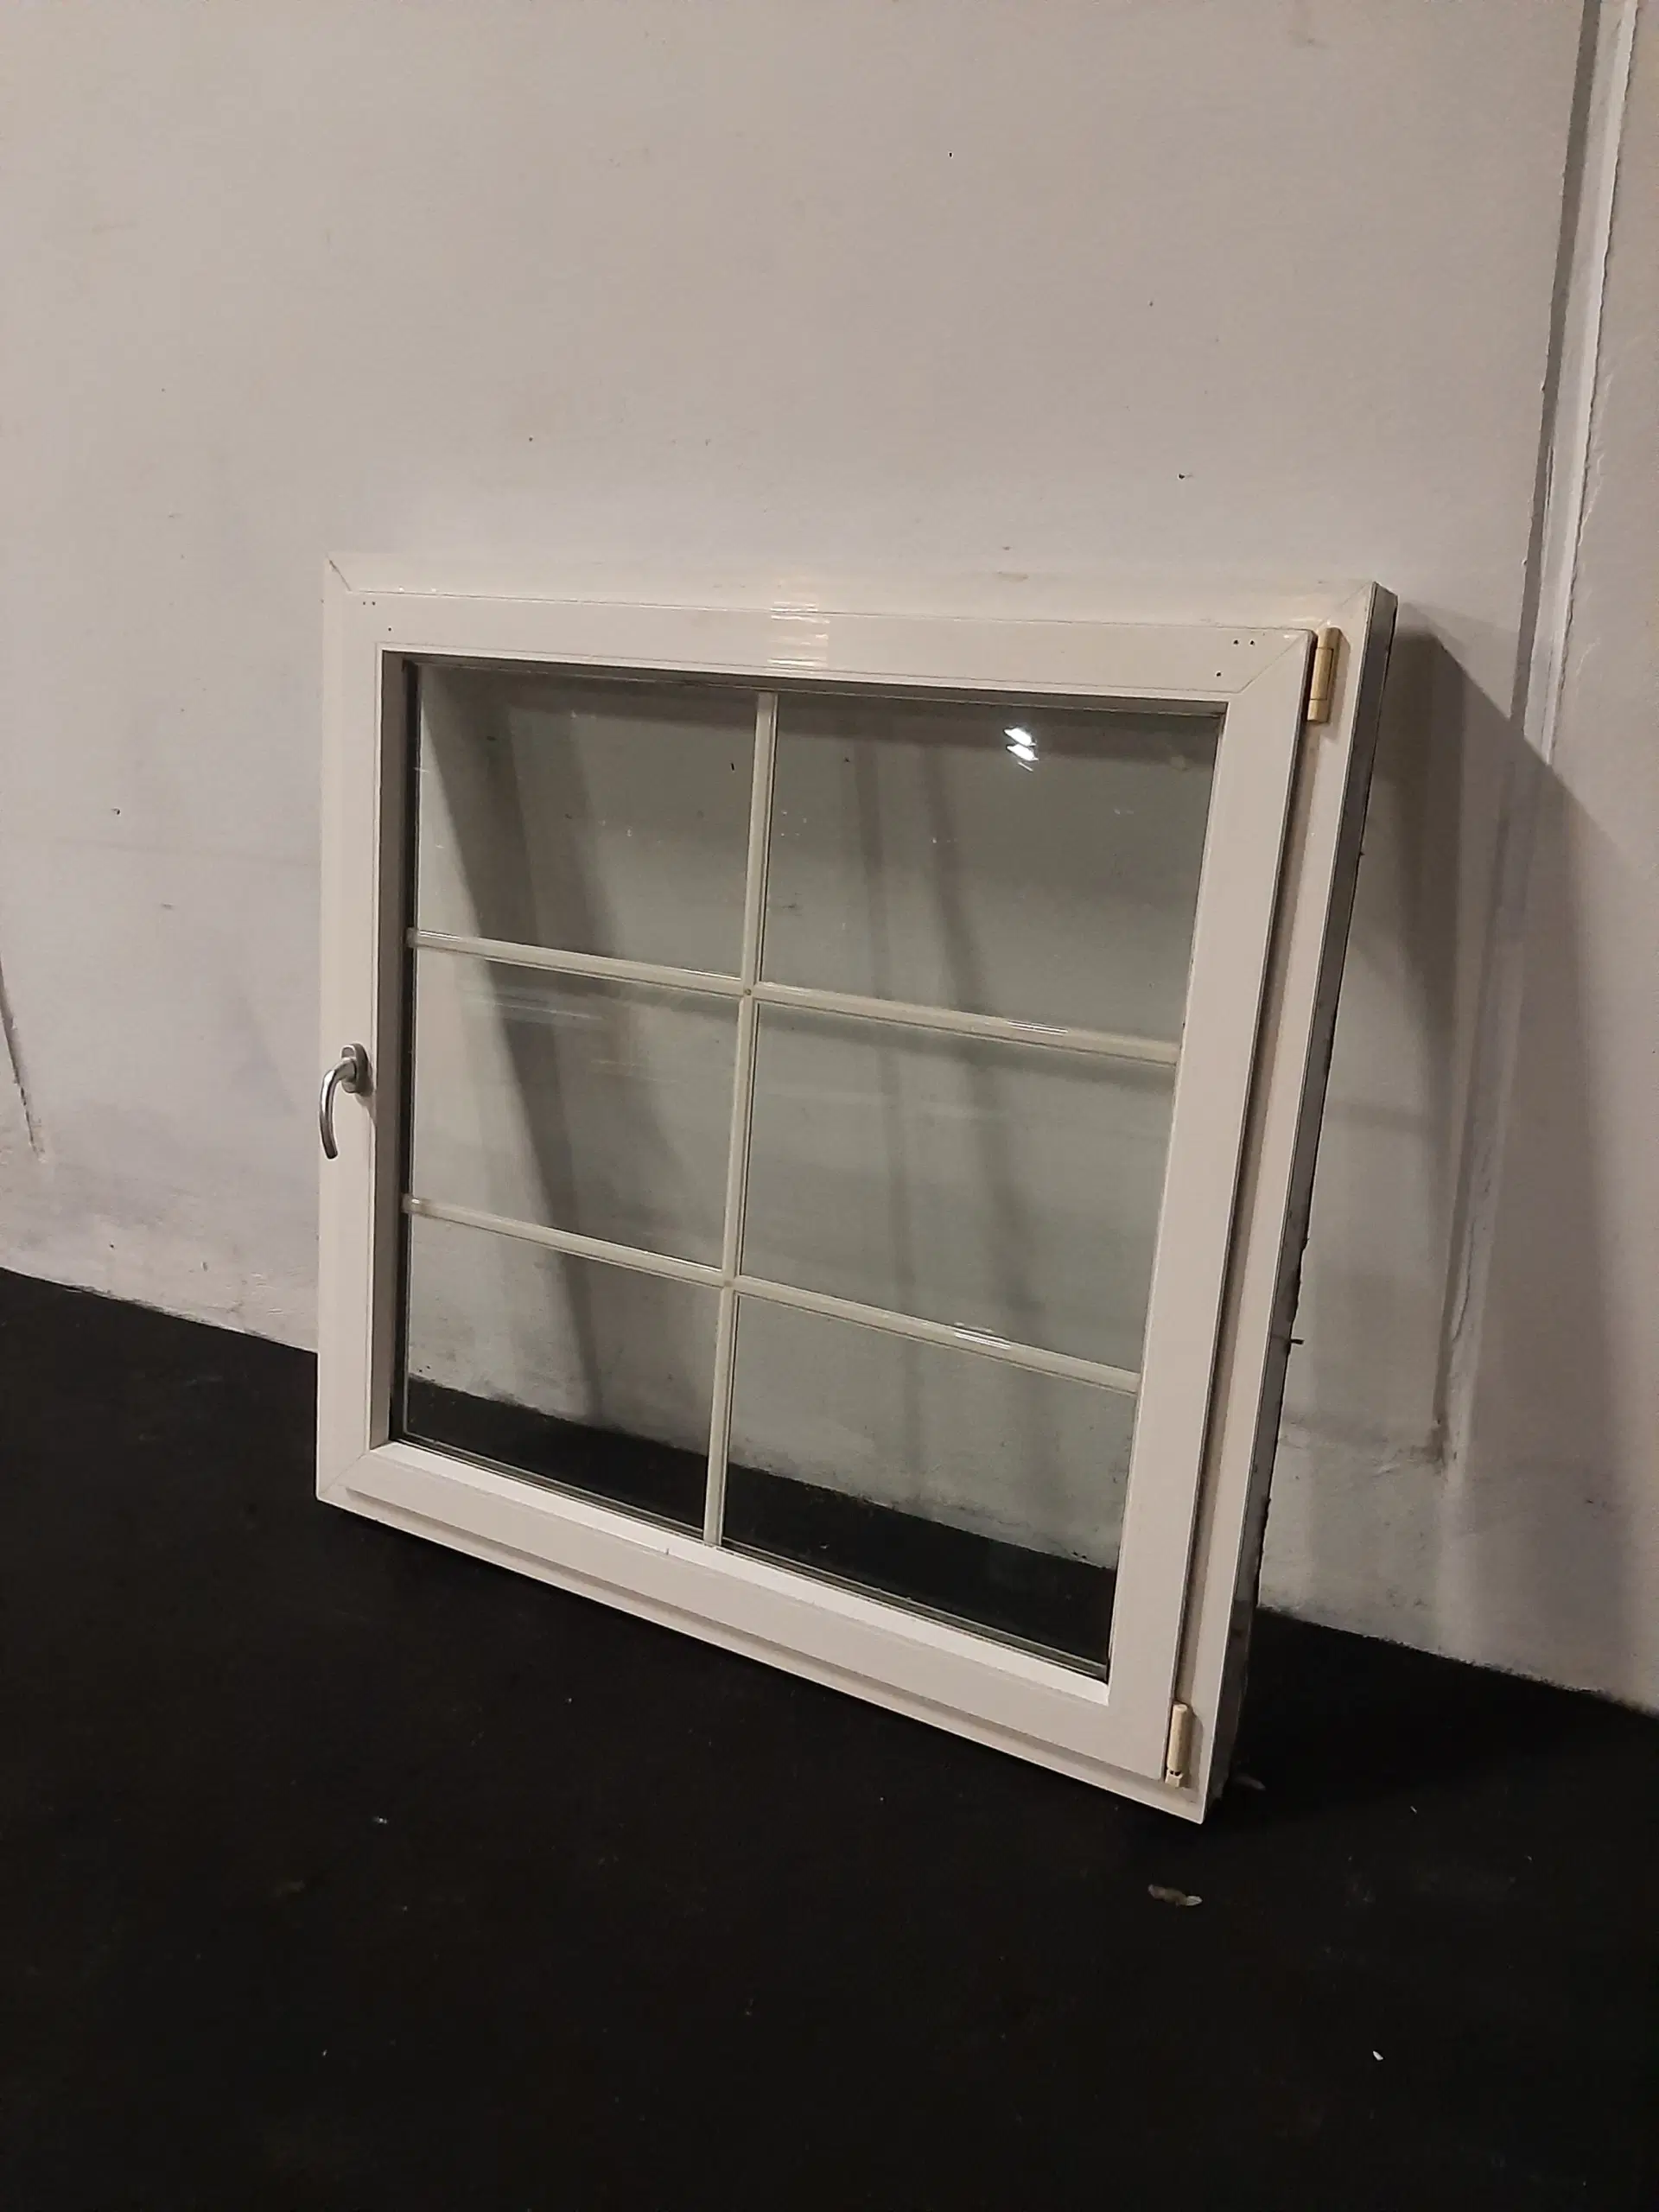 Dreje-kip vindue i pvc 1289x120x1289 mm højrehængt hvid